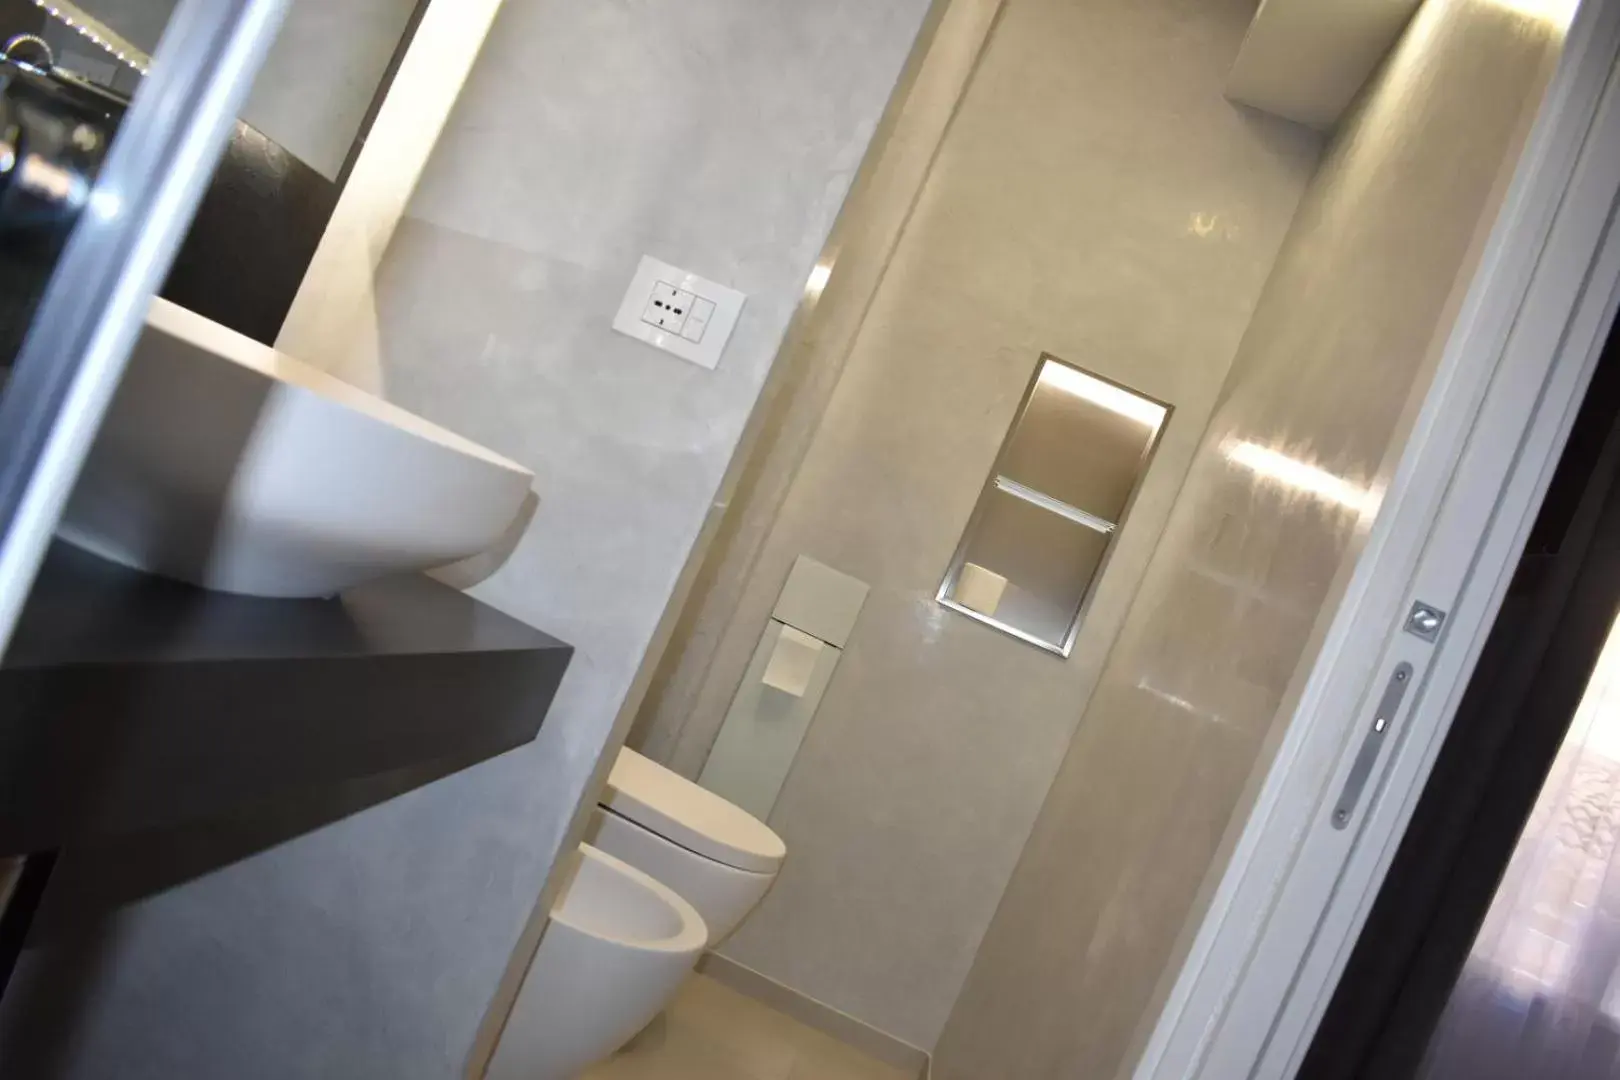 Toilet, Bathroom in B&B Galleria Cavour